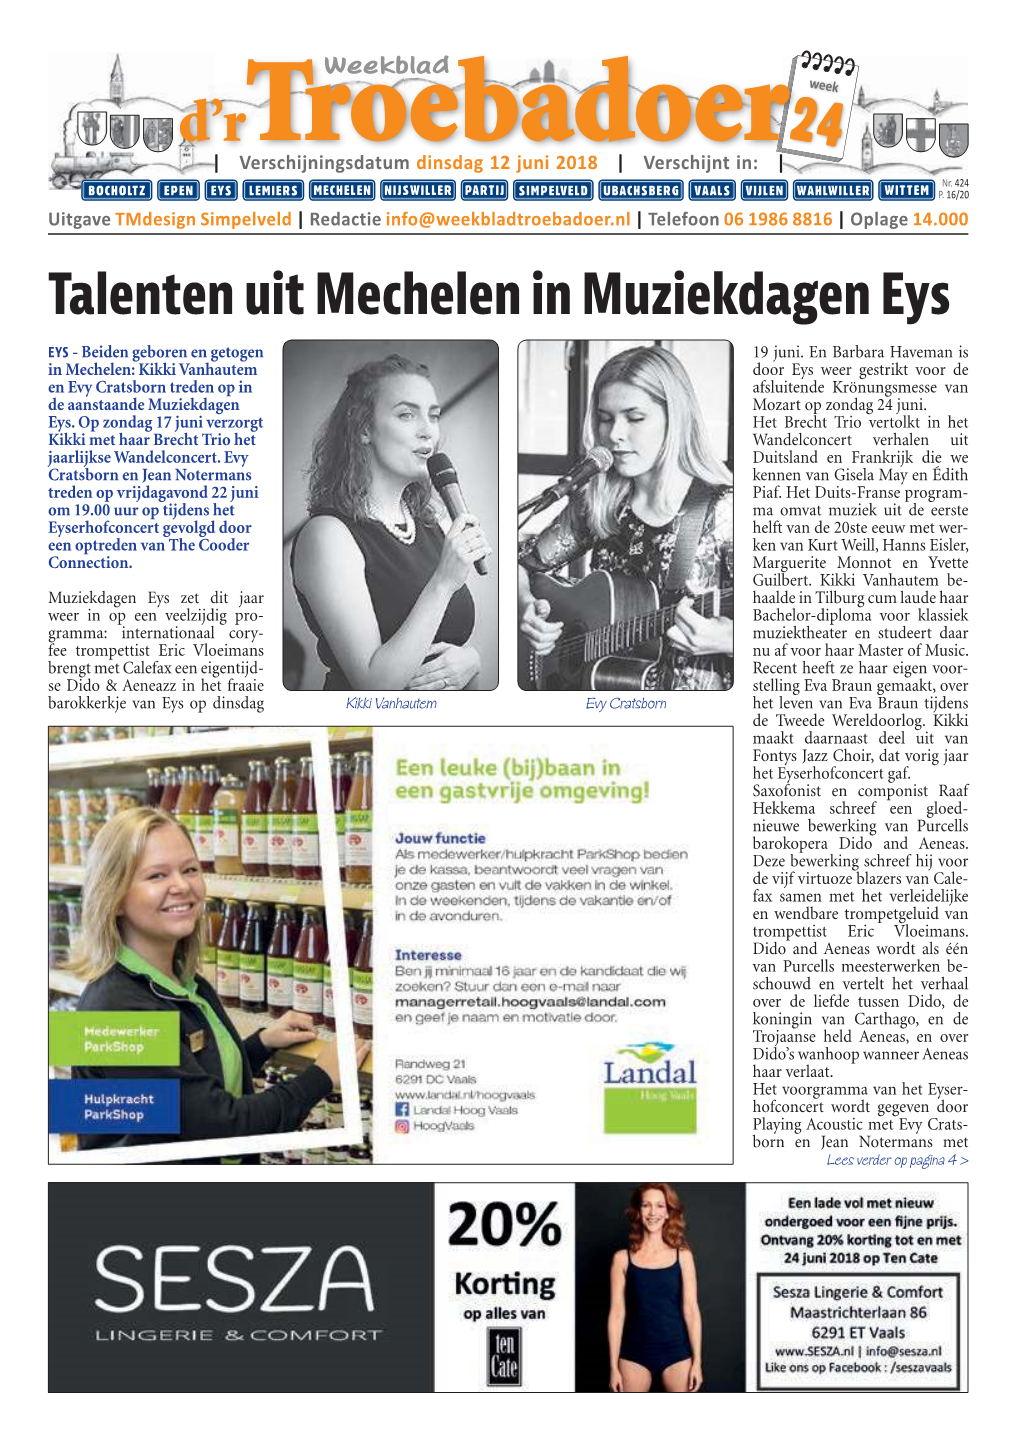 Talenten Uit Mechelen in Muziekdagen Eys